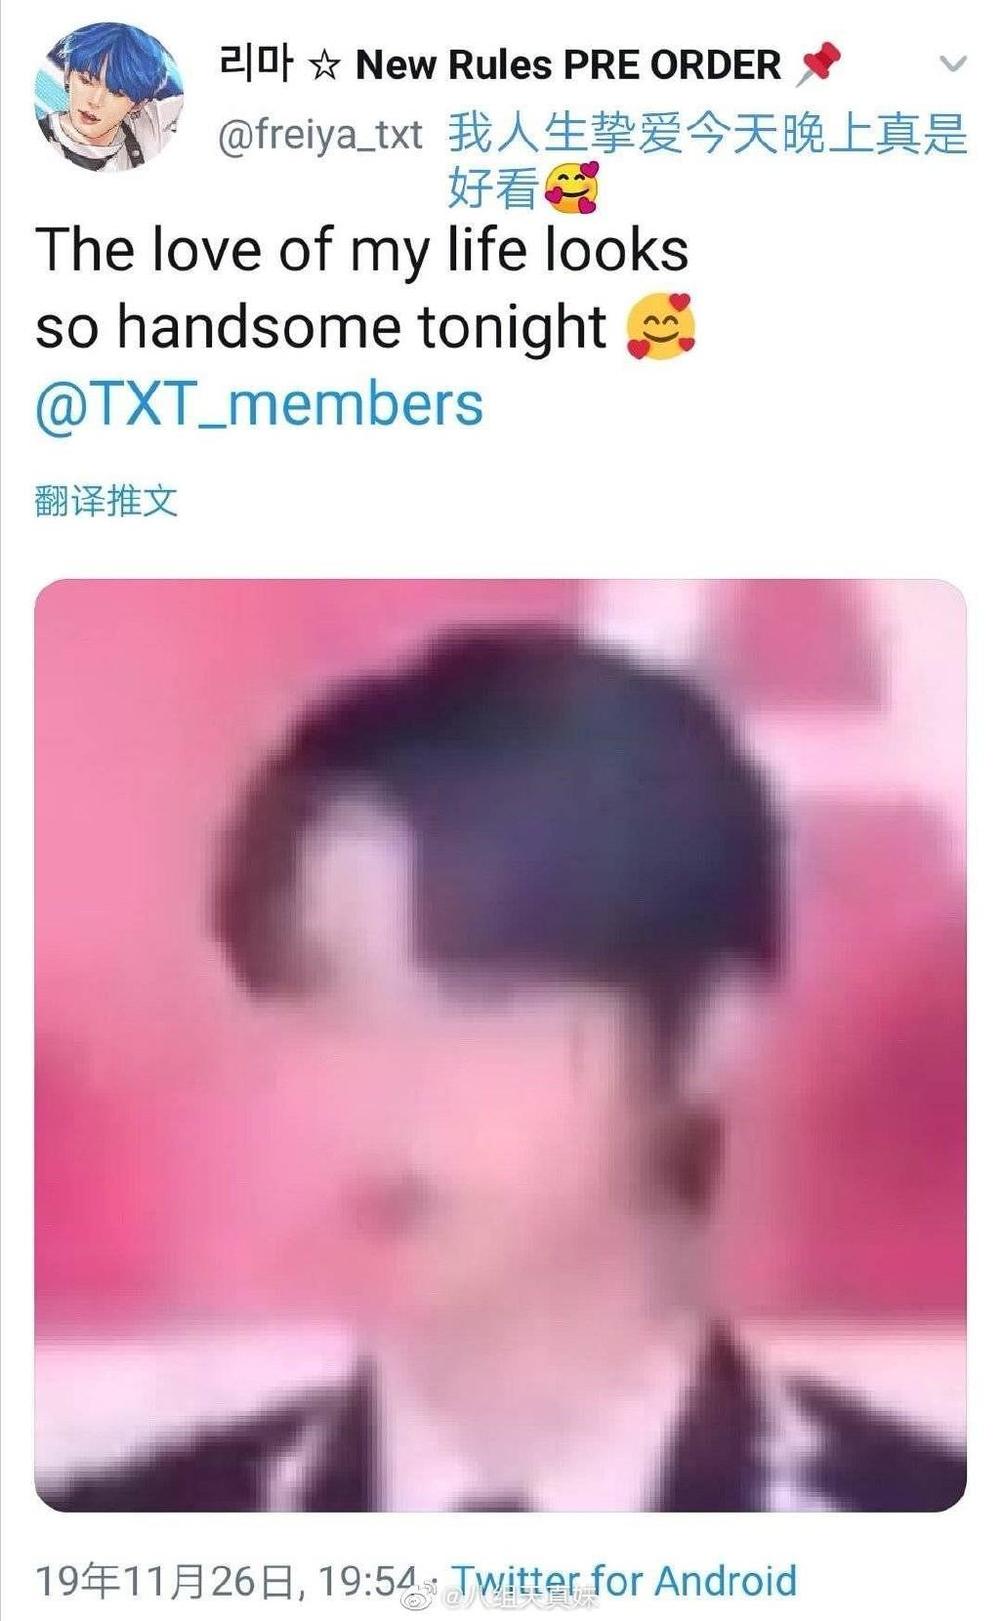  
Một tấm hình chứng minh rằng "ở đây không sương khói nhưng vẫn mơ như ảnh". Tài khoản Weibo này đã đăng ảnh TXT với caption: "Tối nay tình yêu của đời tôi trông thật đẹp trai".